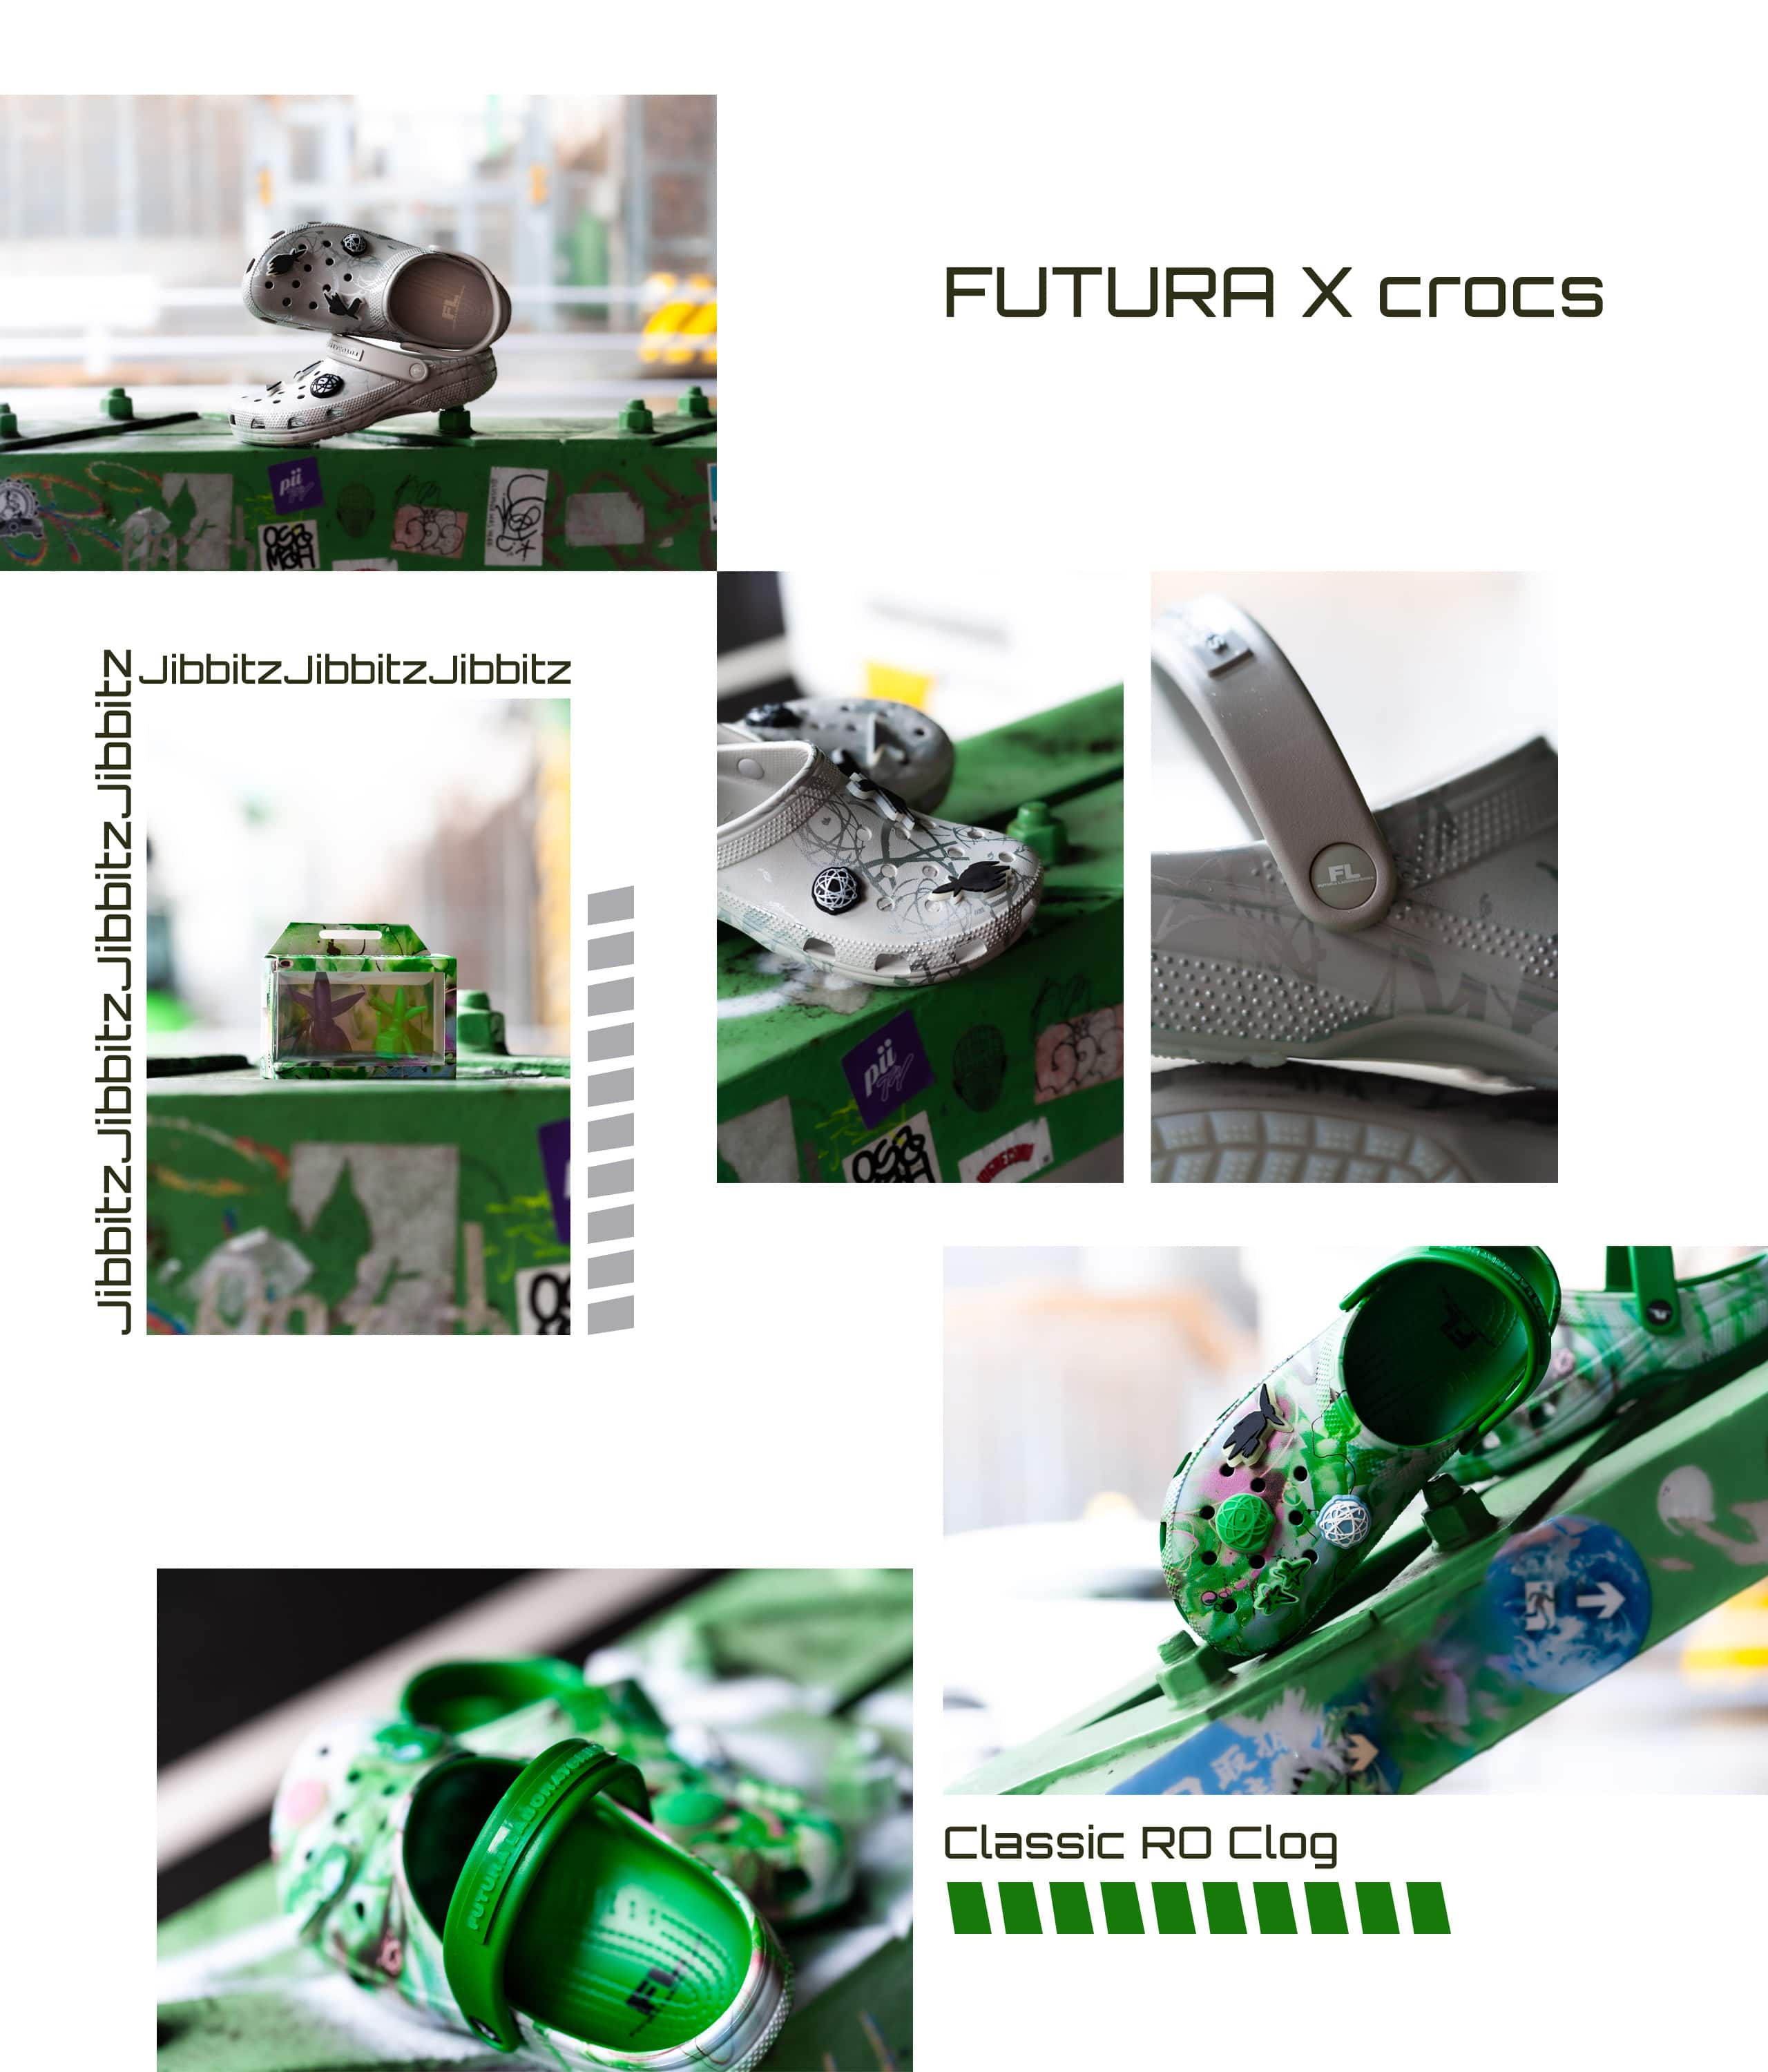 FUTURA X crocs